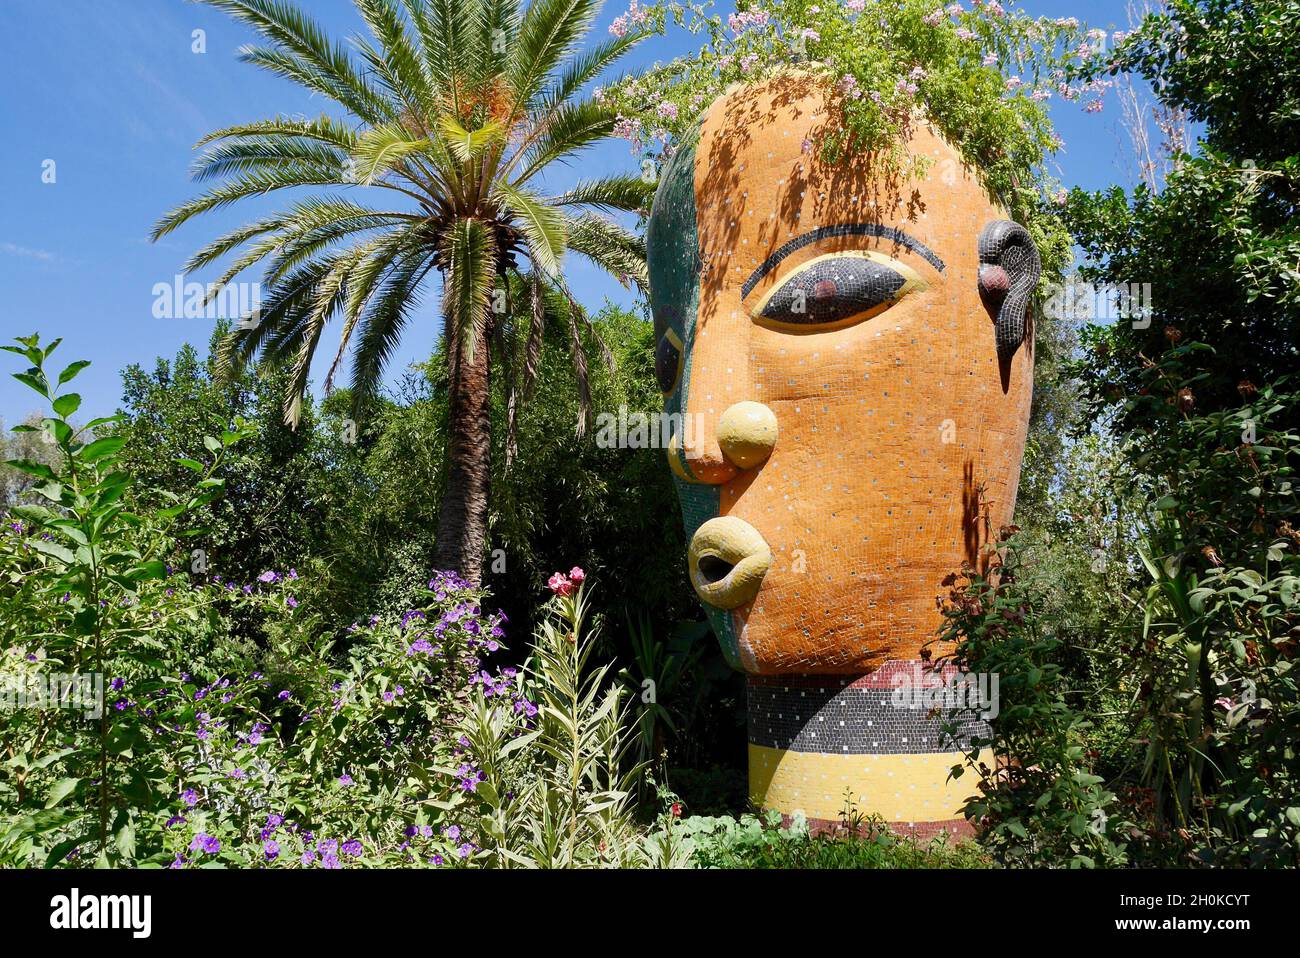 Marrakech, Maroc, 24.04.2016.Anima, le jardin botanique imaginatif d'André Heller.Sculpture colorée de la tête d'une femme. Banque D'Images